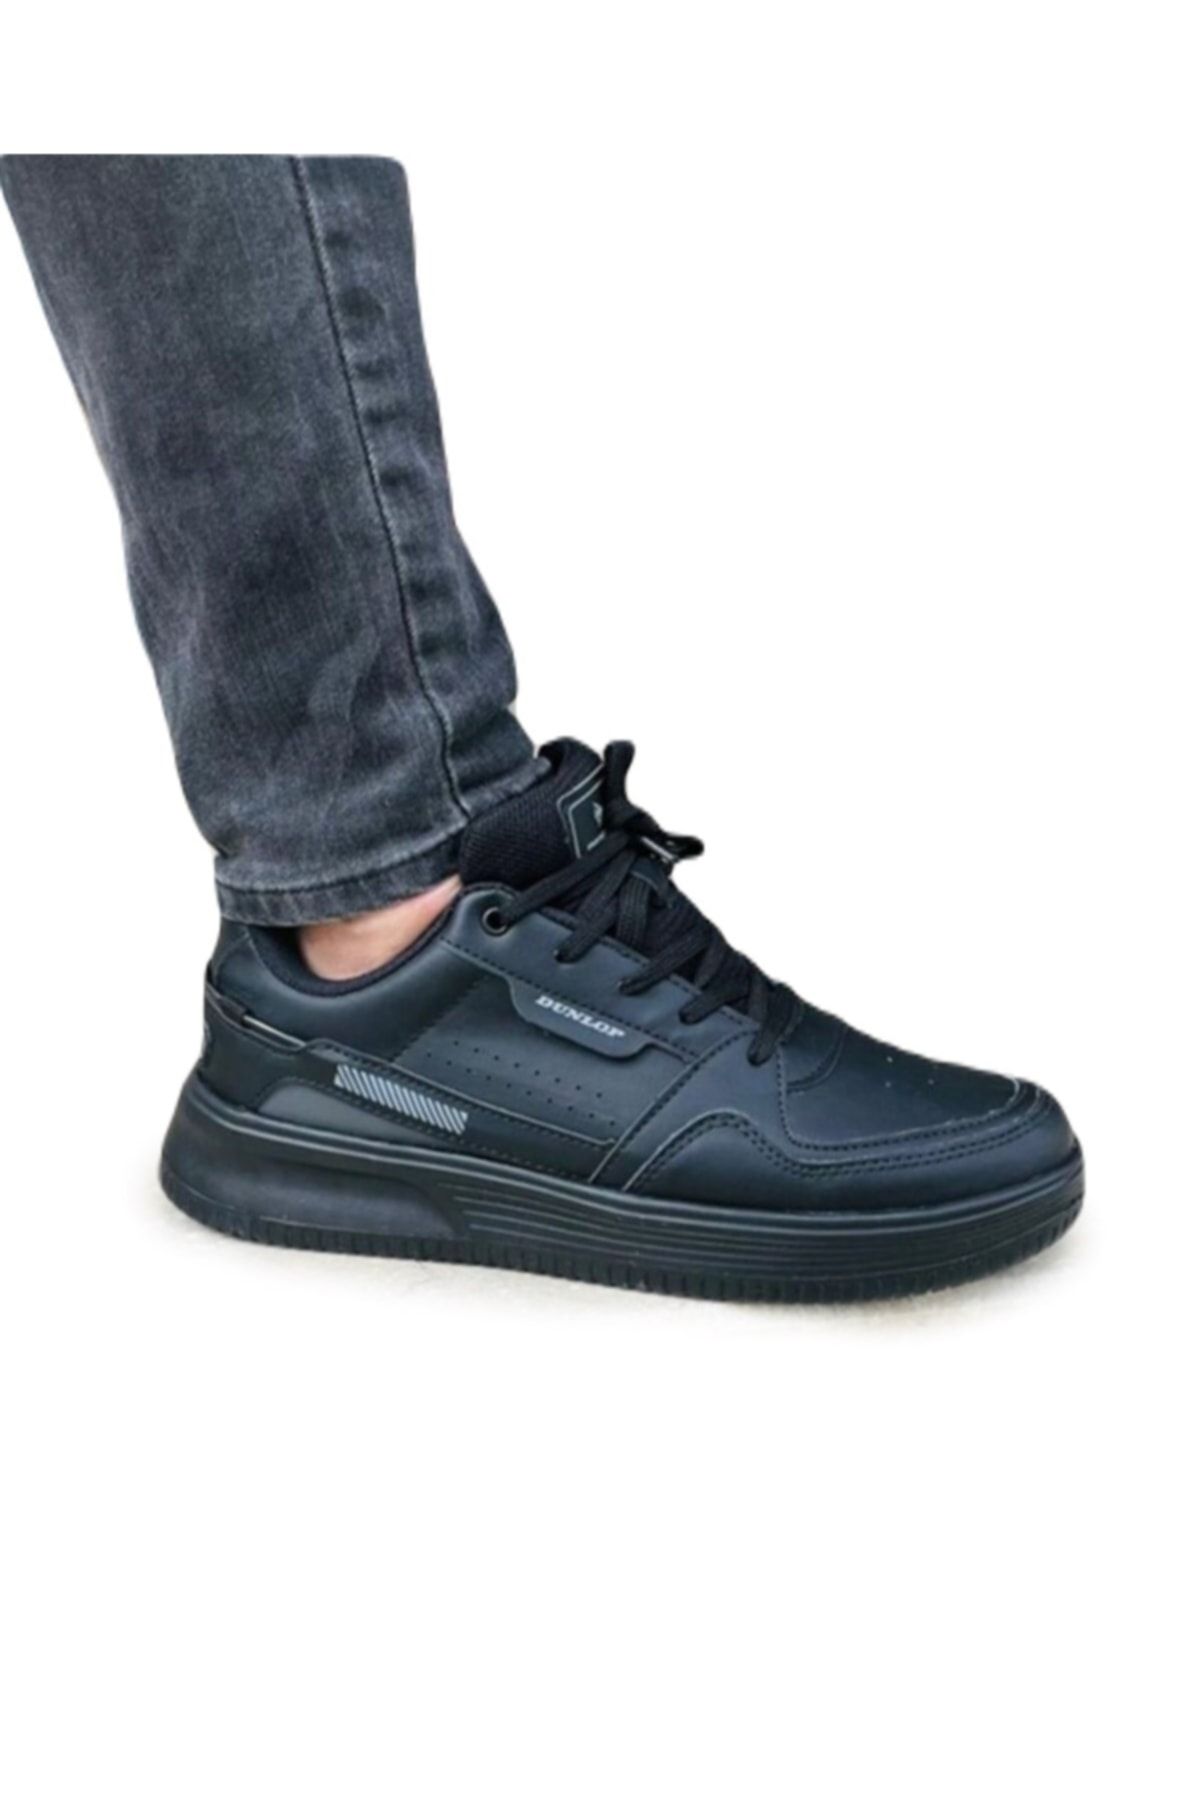 Dunlop Erkek Sneaker Günlük Spor Ayakkabı 1769 Full Siyah